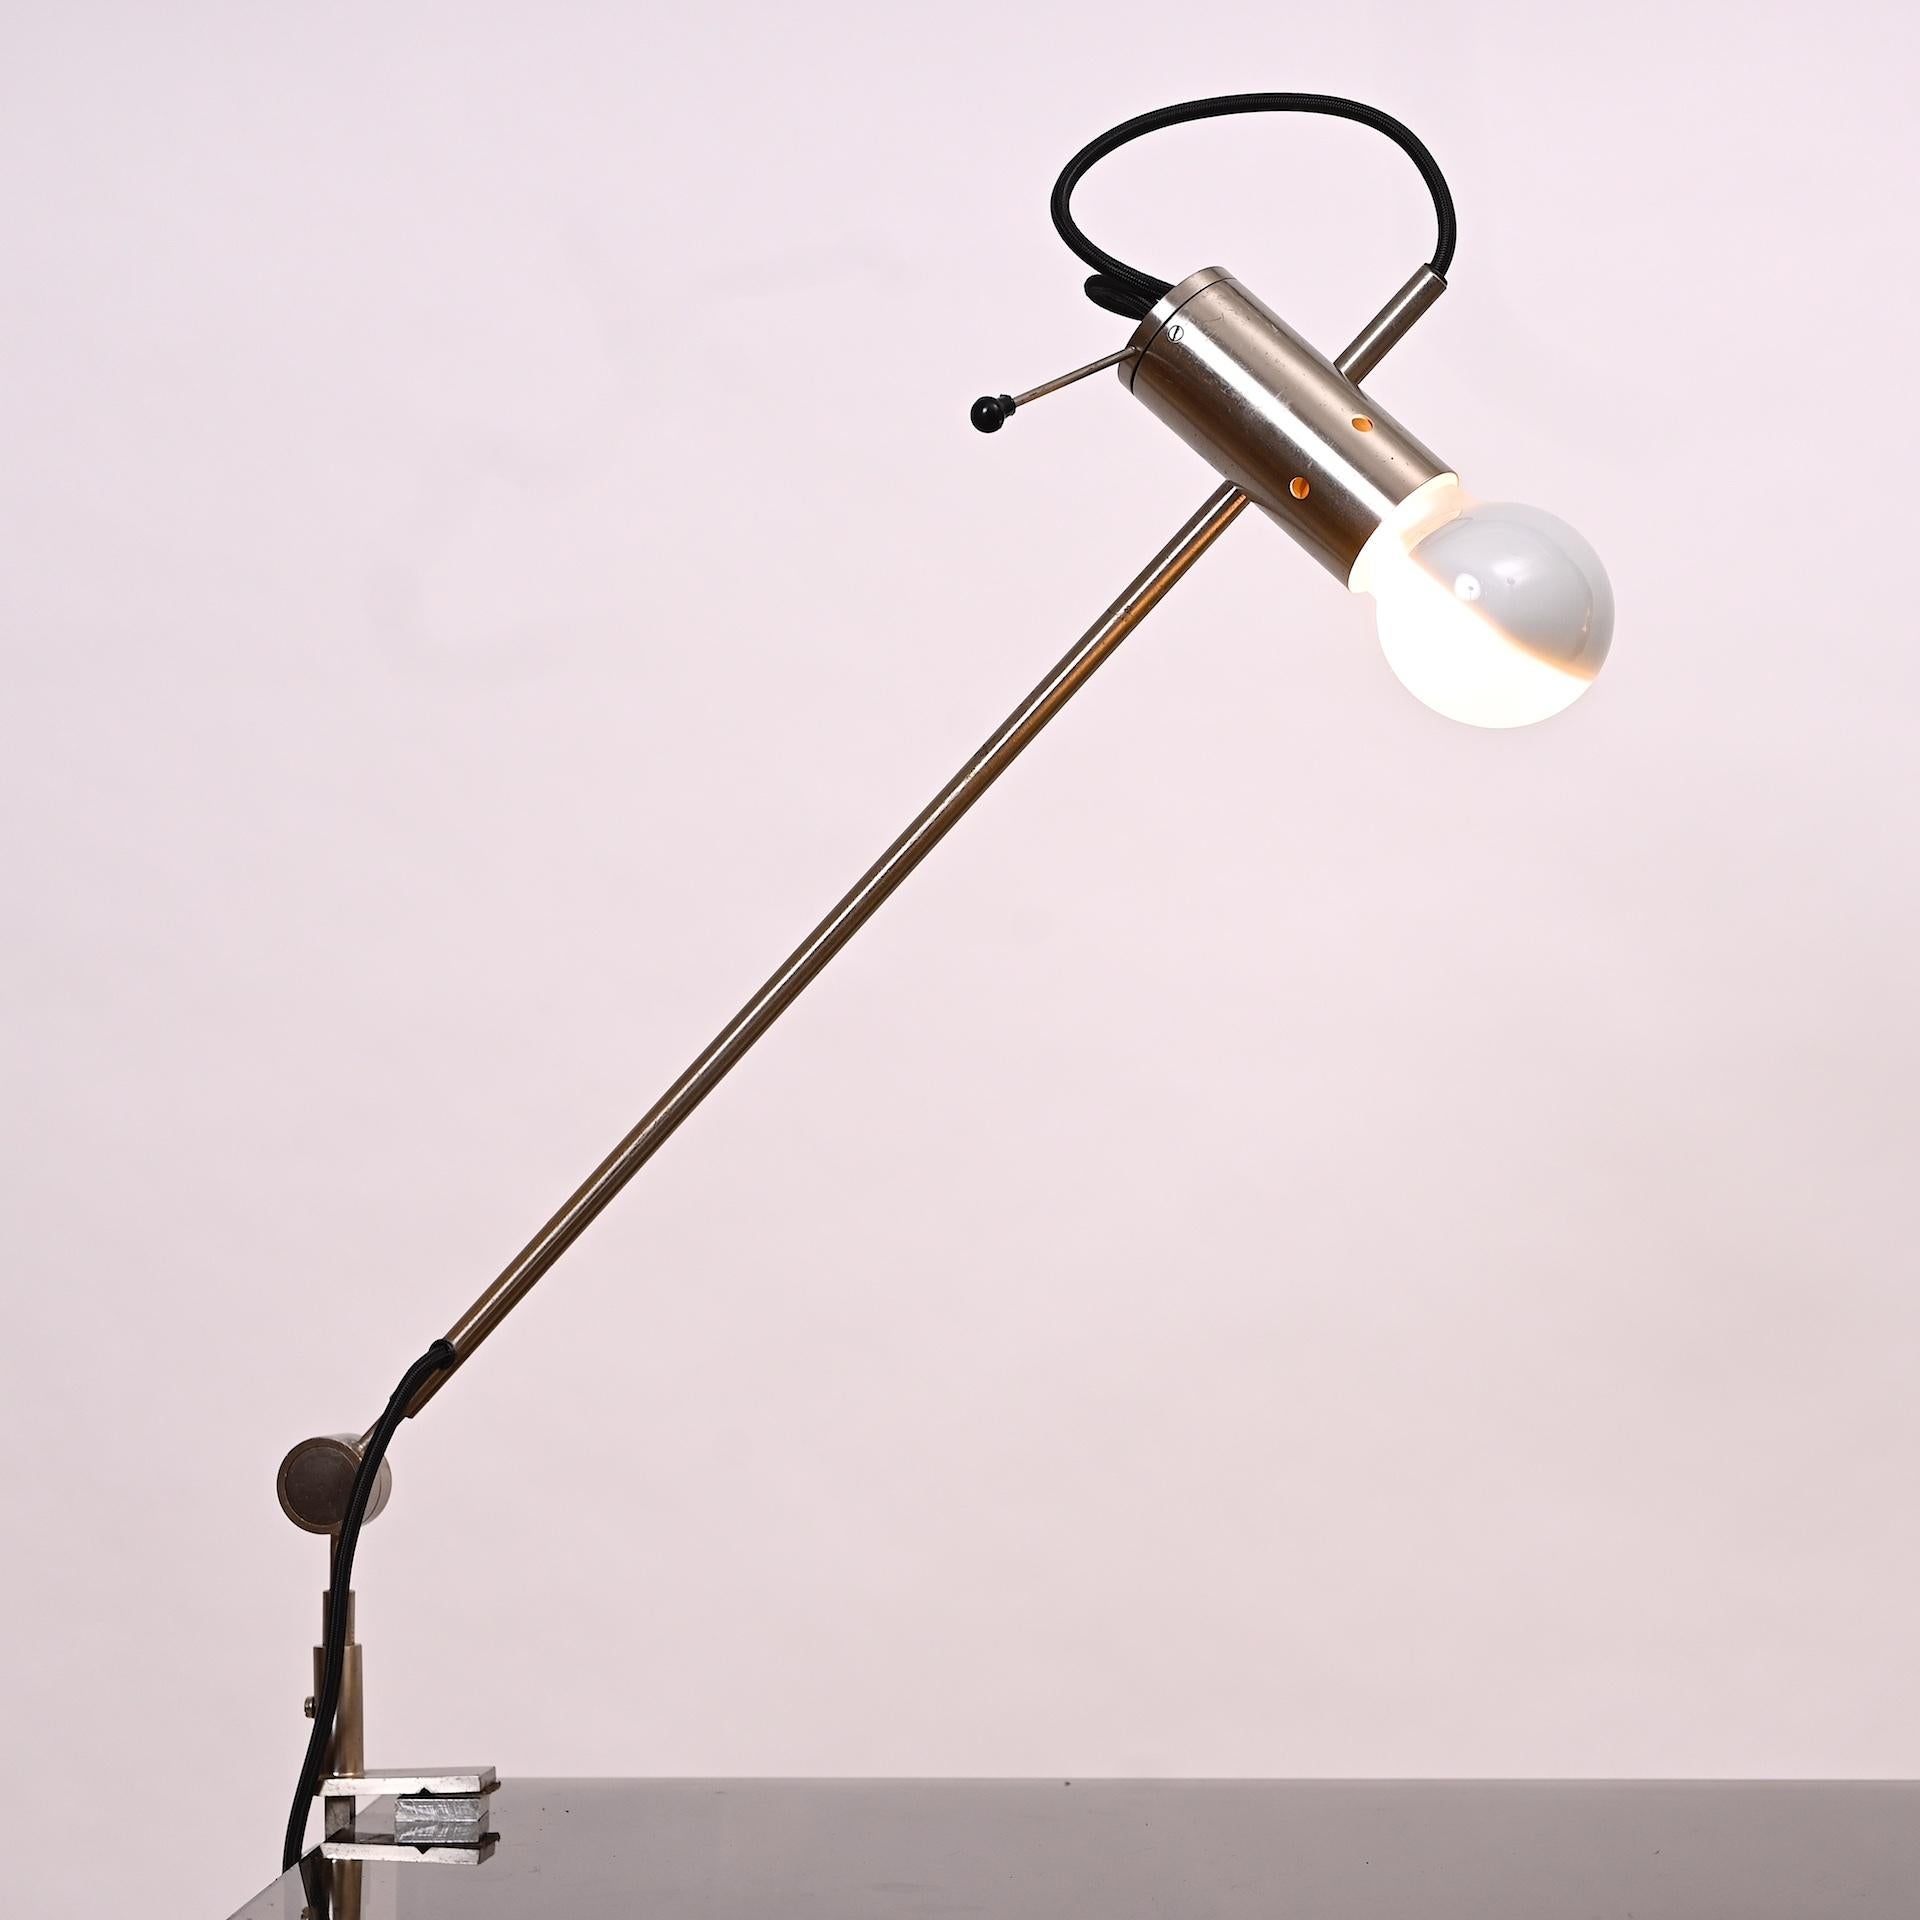 Tito Agnoli pour Oluce. Italie 1954

Lampe à pince articulée et réglable

Design/One parfait. La lumière peut être orientée dans n'importe quelle direction.

Modèle 255

Re-câblé pour les États-Unis et l'Europe.